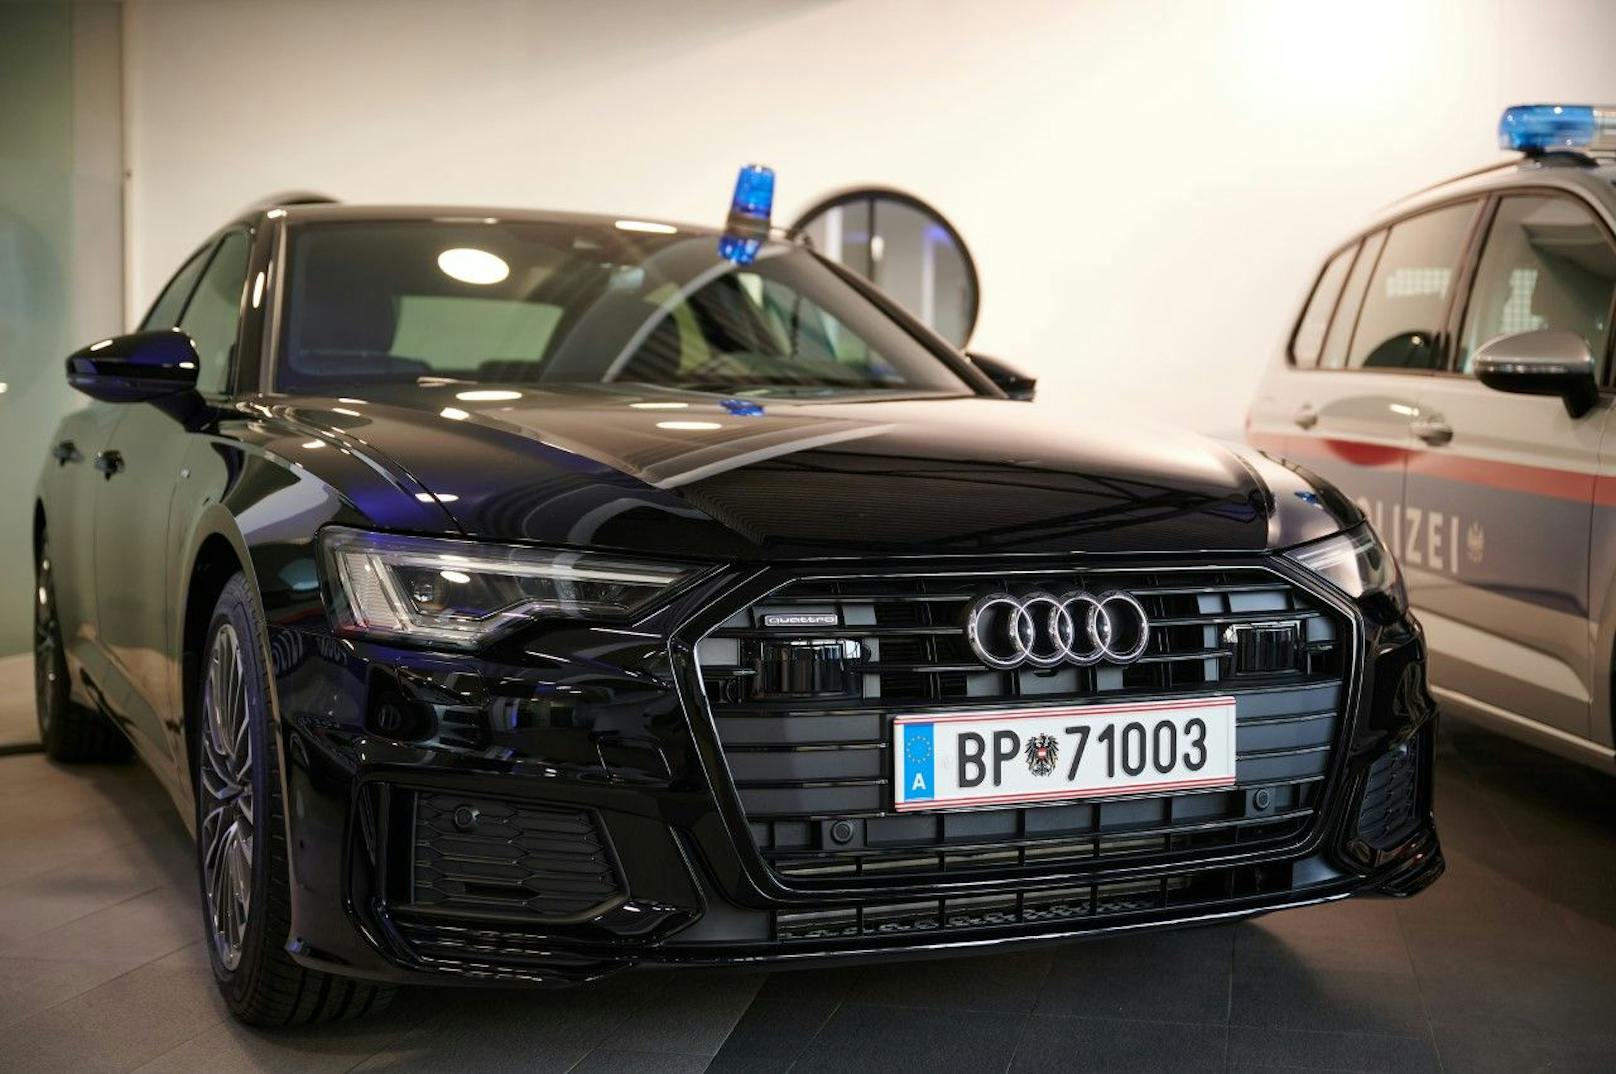 Österreichs Polizisten können weiter auf moderne und bestens gewartete Fahrzeuge zurückgreifen.